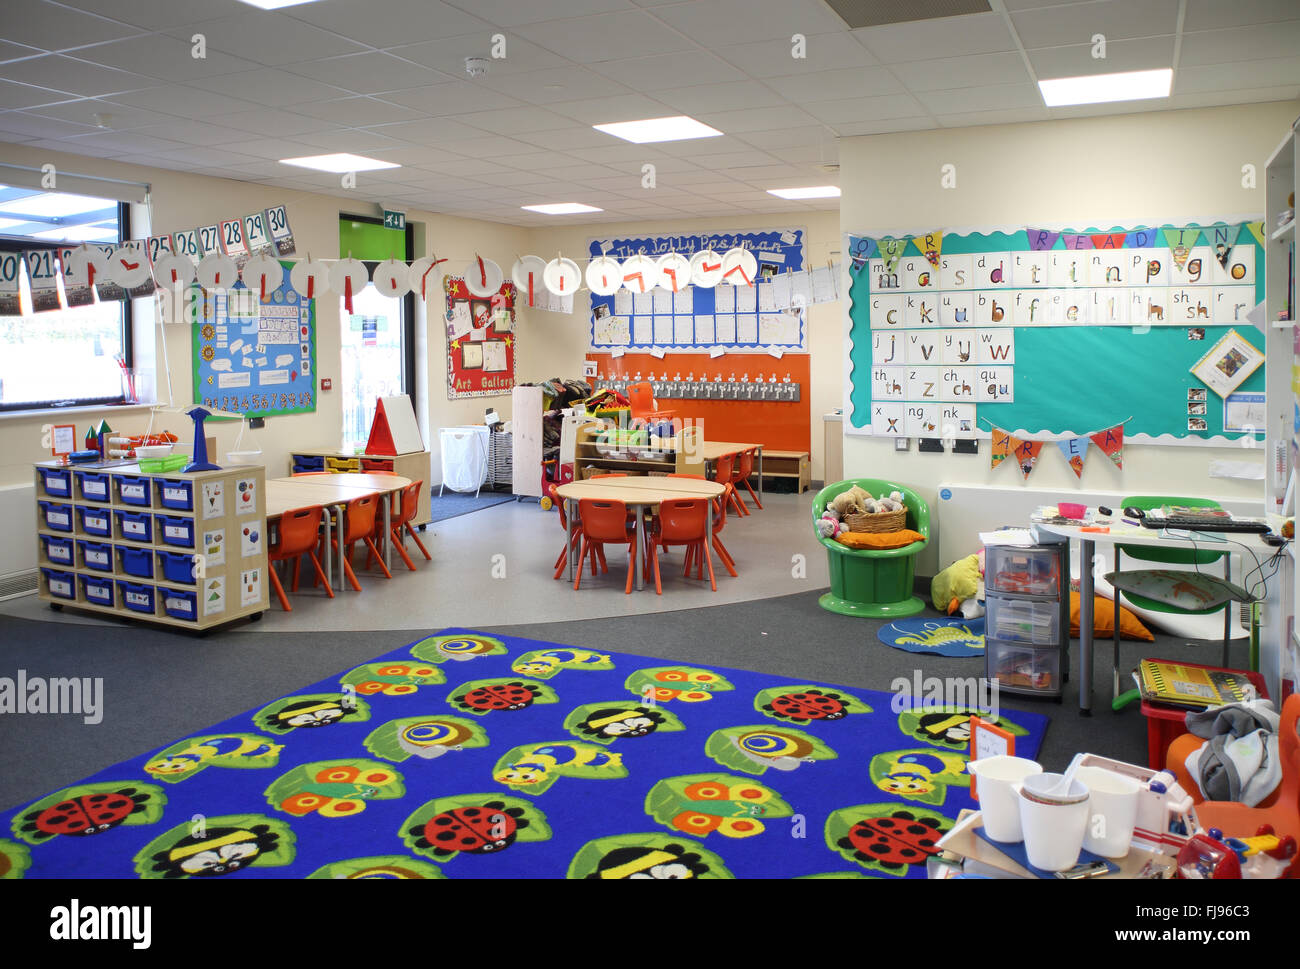 Vue intérieure d'une salle de classe en maternelle dans une nouvelle école primaire britannique. Vide, pas d'élèves. Banque D'Images